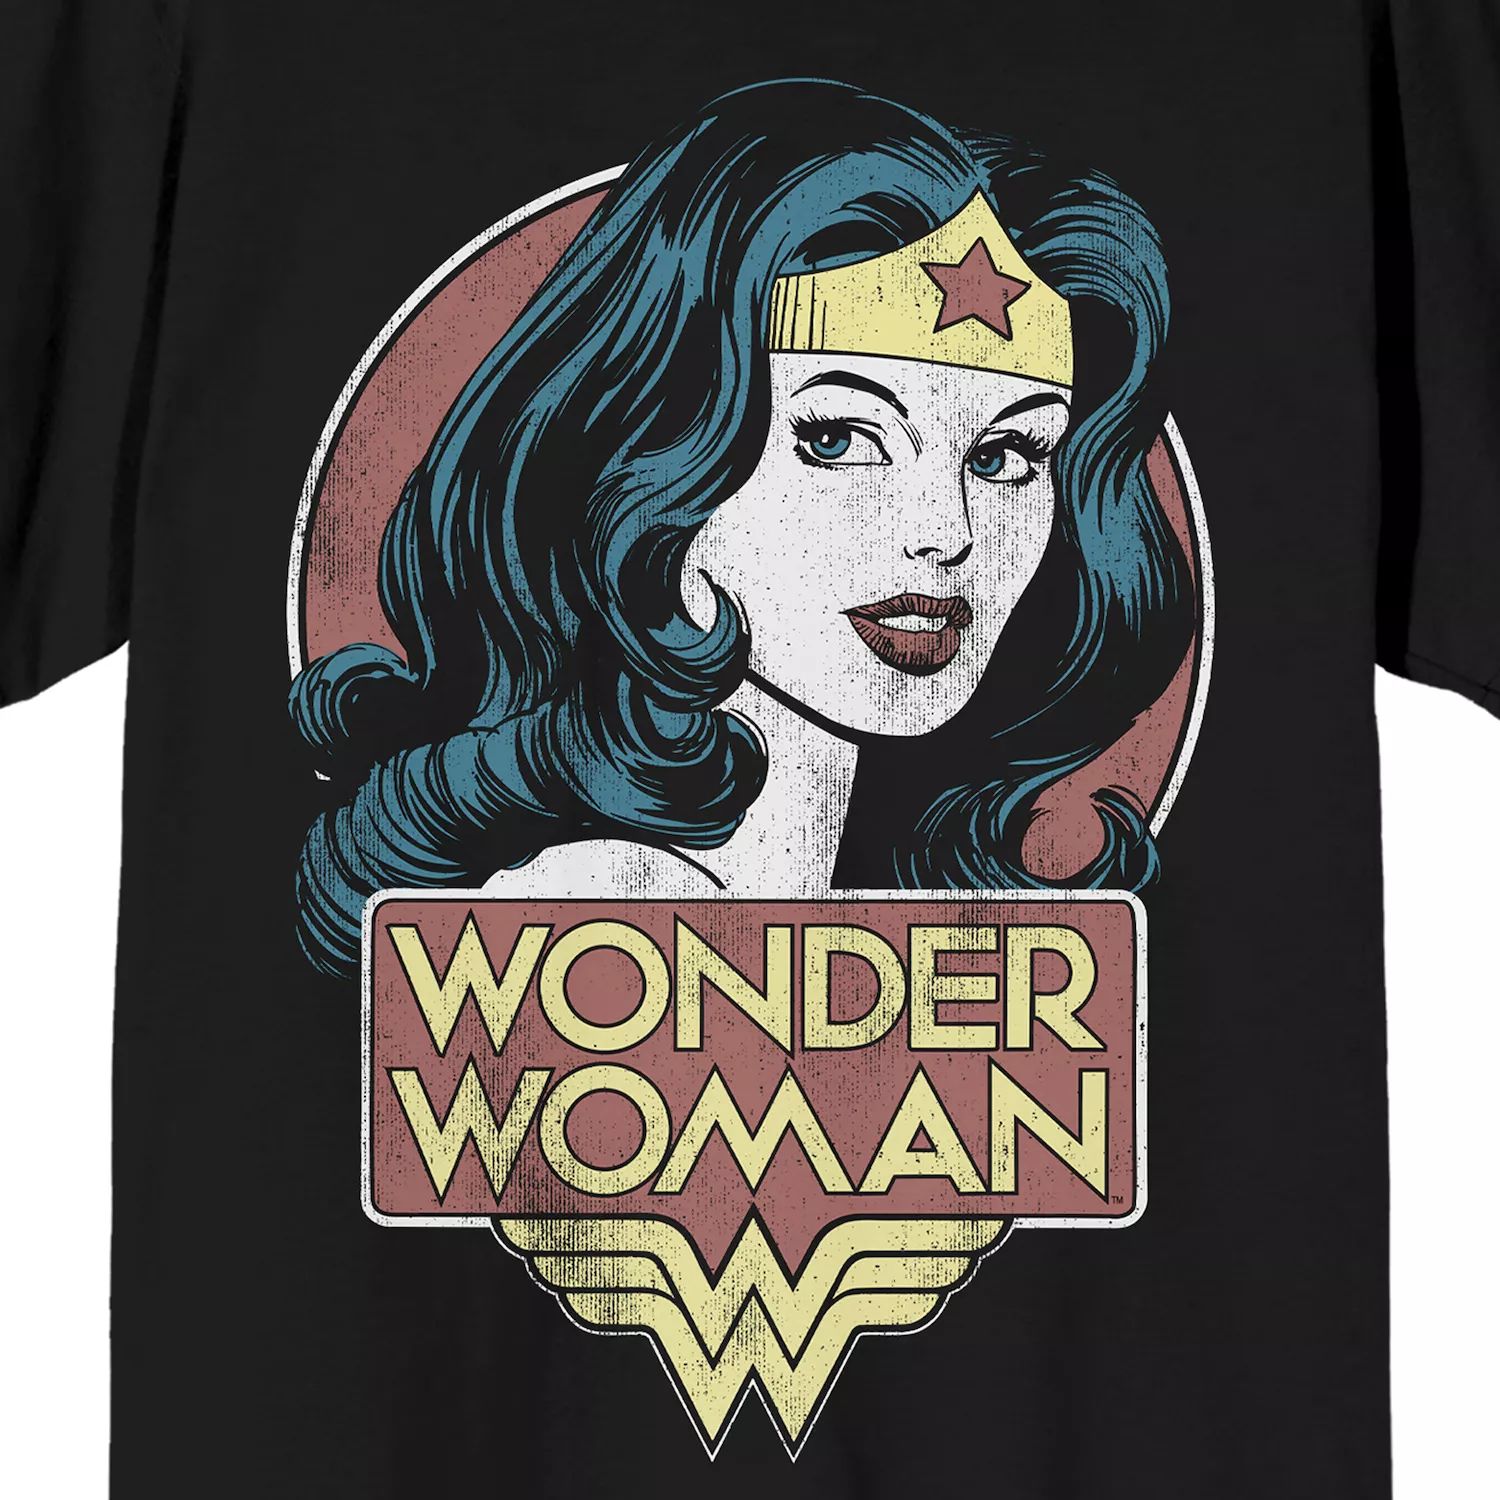 Мужская футболка Wonder Woman с портретом Licensed Character цена и фото